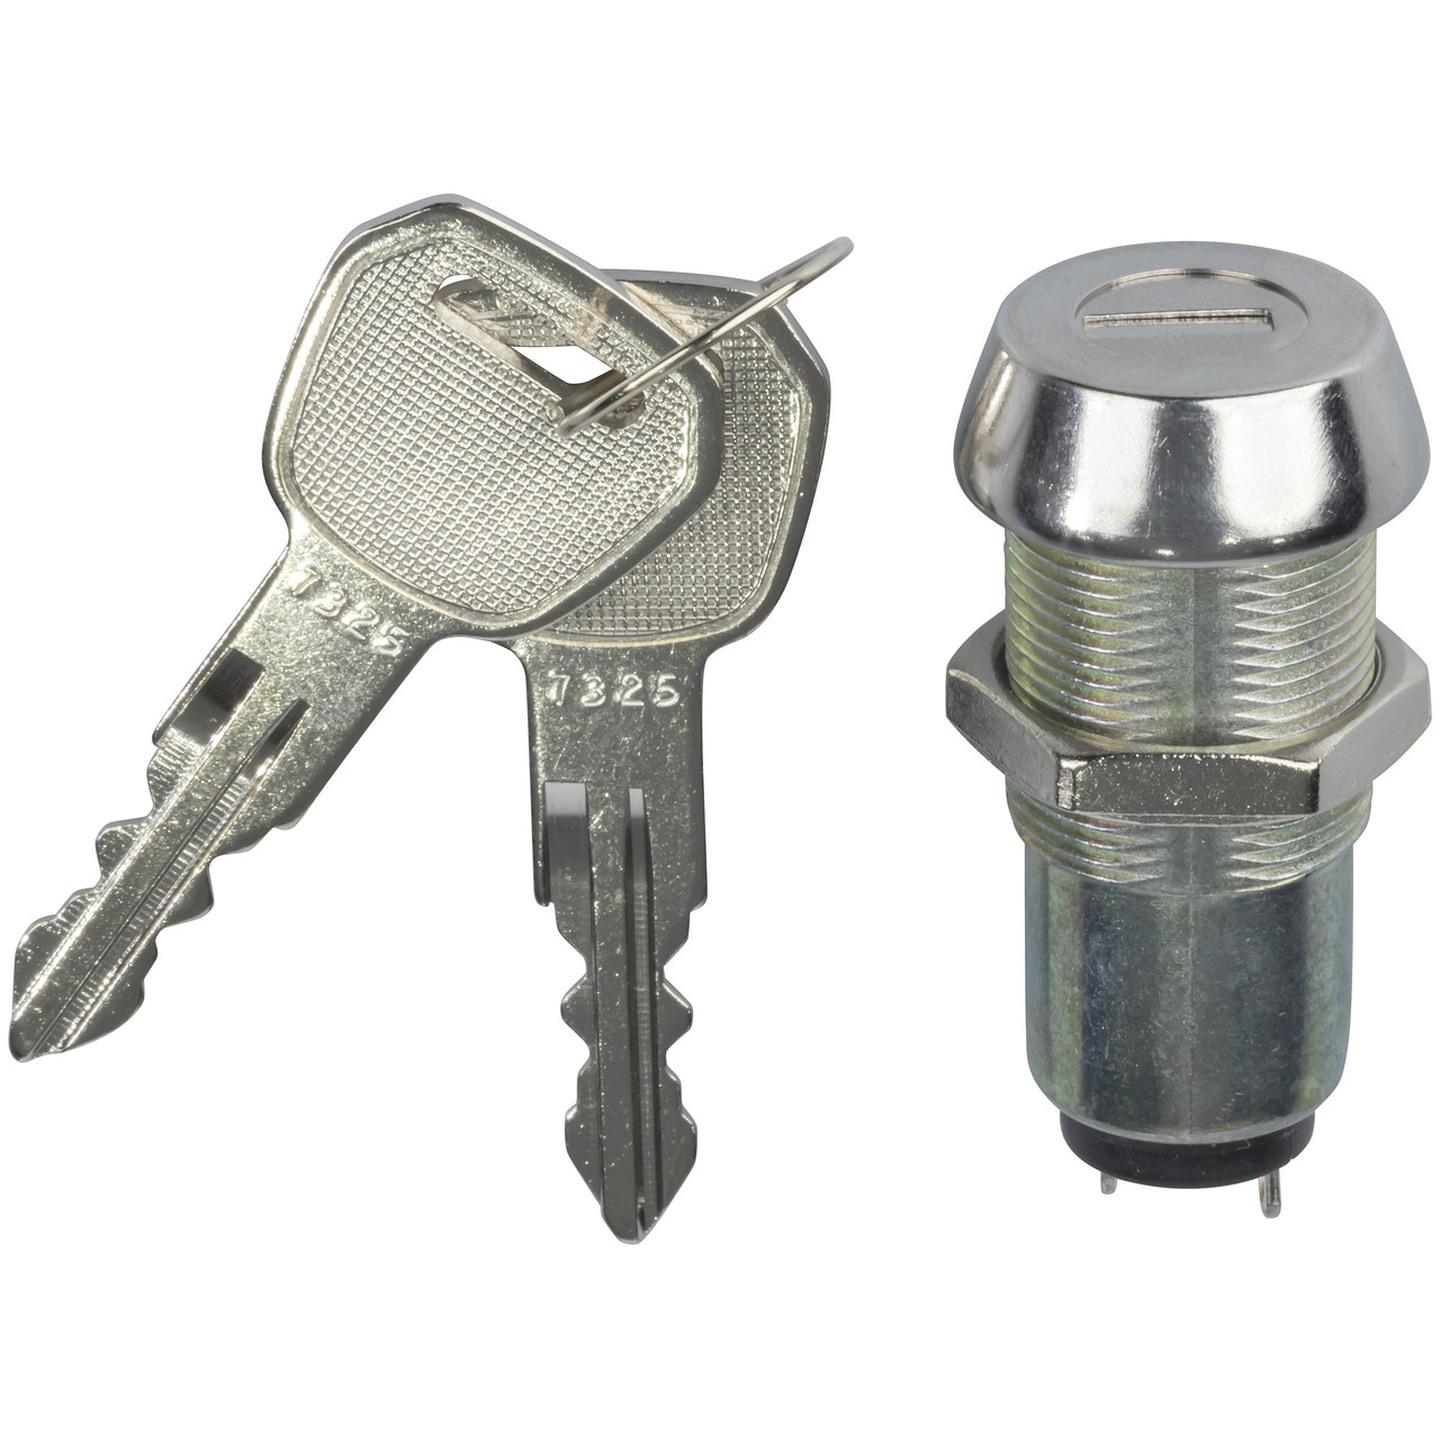 Barrel Key Switch - Key Type B